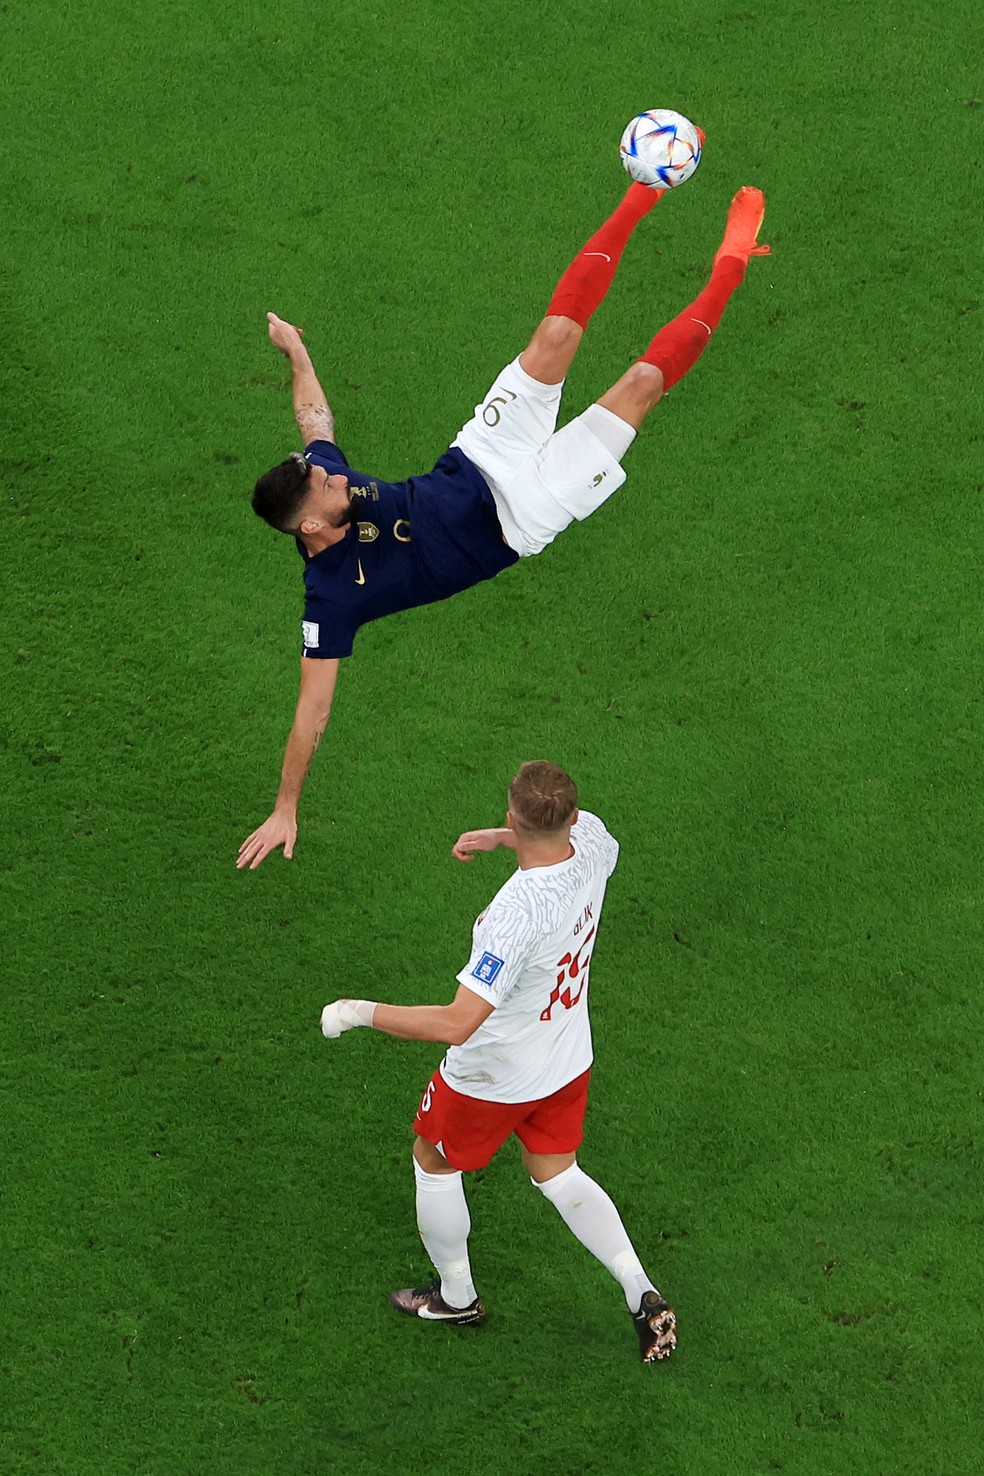 Os lances das partidas ganham uma plasticidade extra clicados do alto, como nesta disputa entre o francês Giroud e o polonês Glik — Foto: Buda Mendes / Getty Images